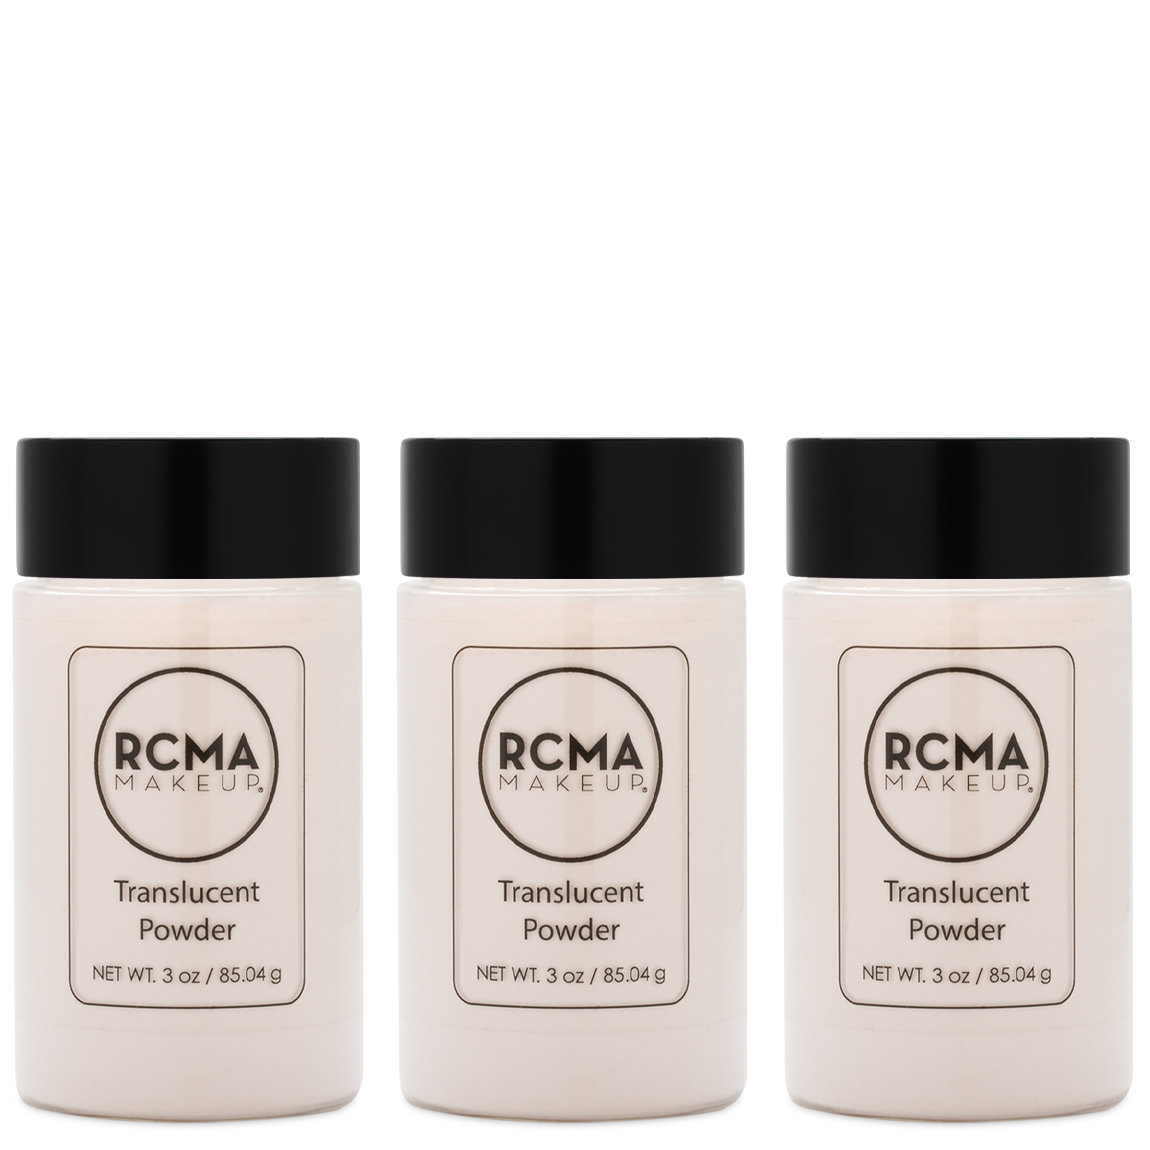 RCMA Makeup Translucent Powder 3 oz Trio